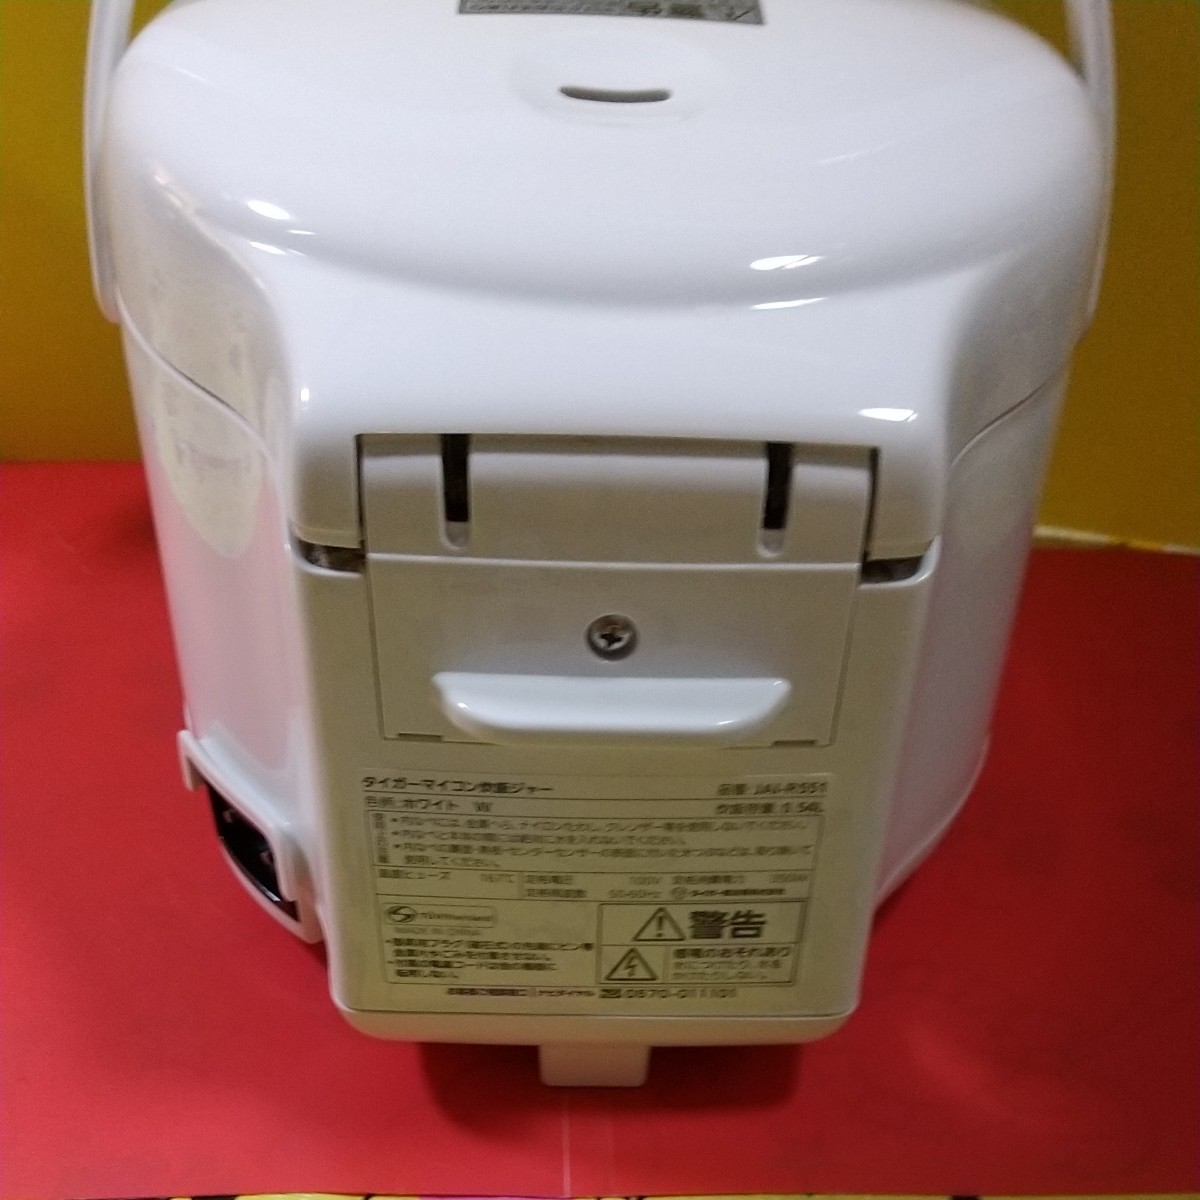 ★ 2021年製  タイガーマイコン炊飯ジャー JAI-R551     (3合炊き)